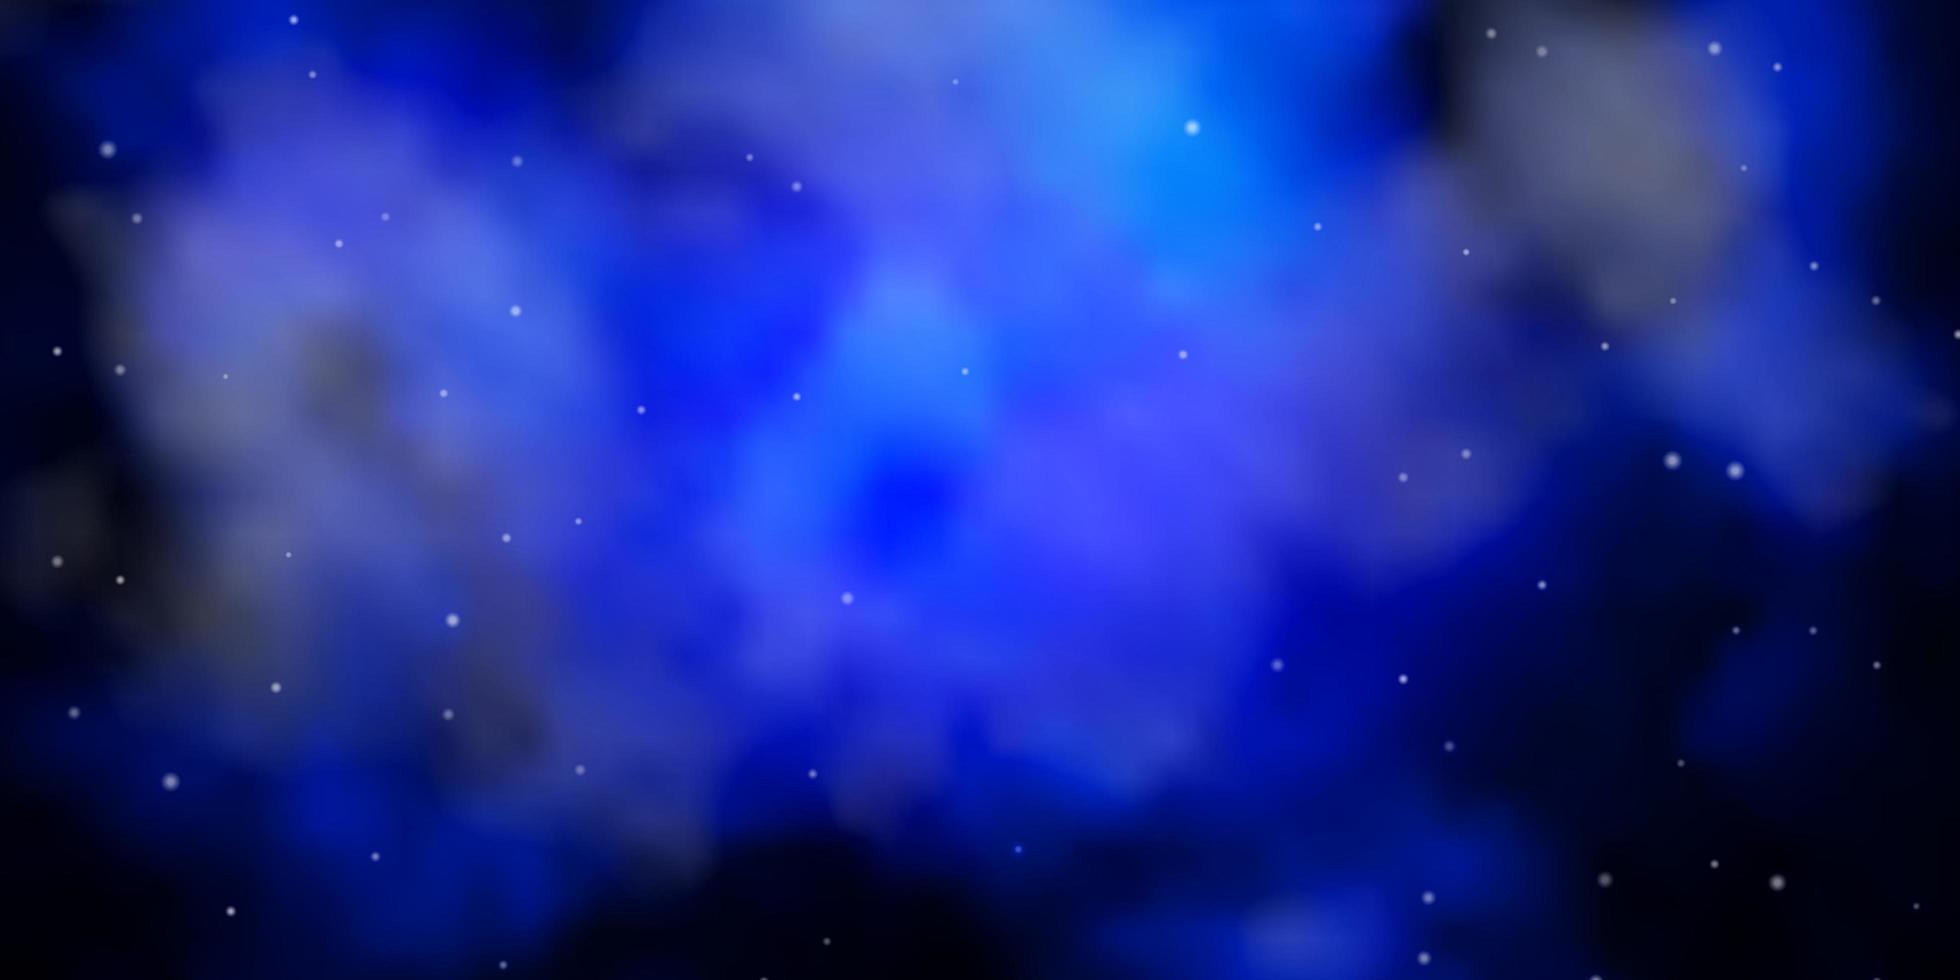 layout de vetor de azul escuro com estrelas brilhantes. ilustração colorida em estilo abstrato com estrelas gradientes. design para a promoção de seus negócios.